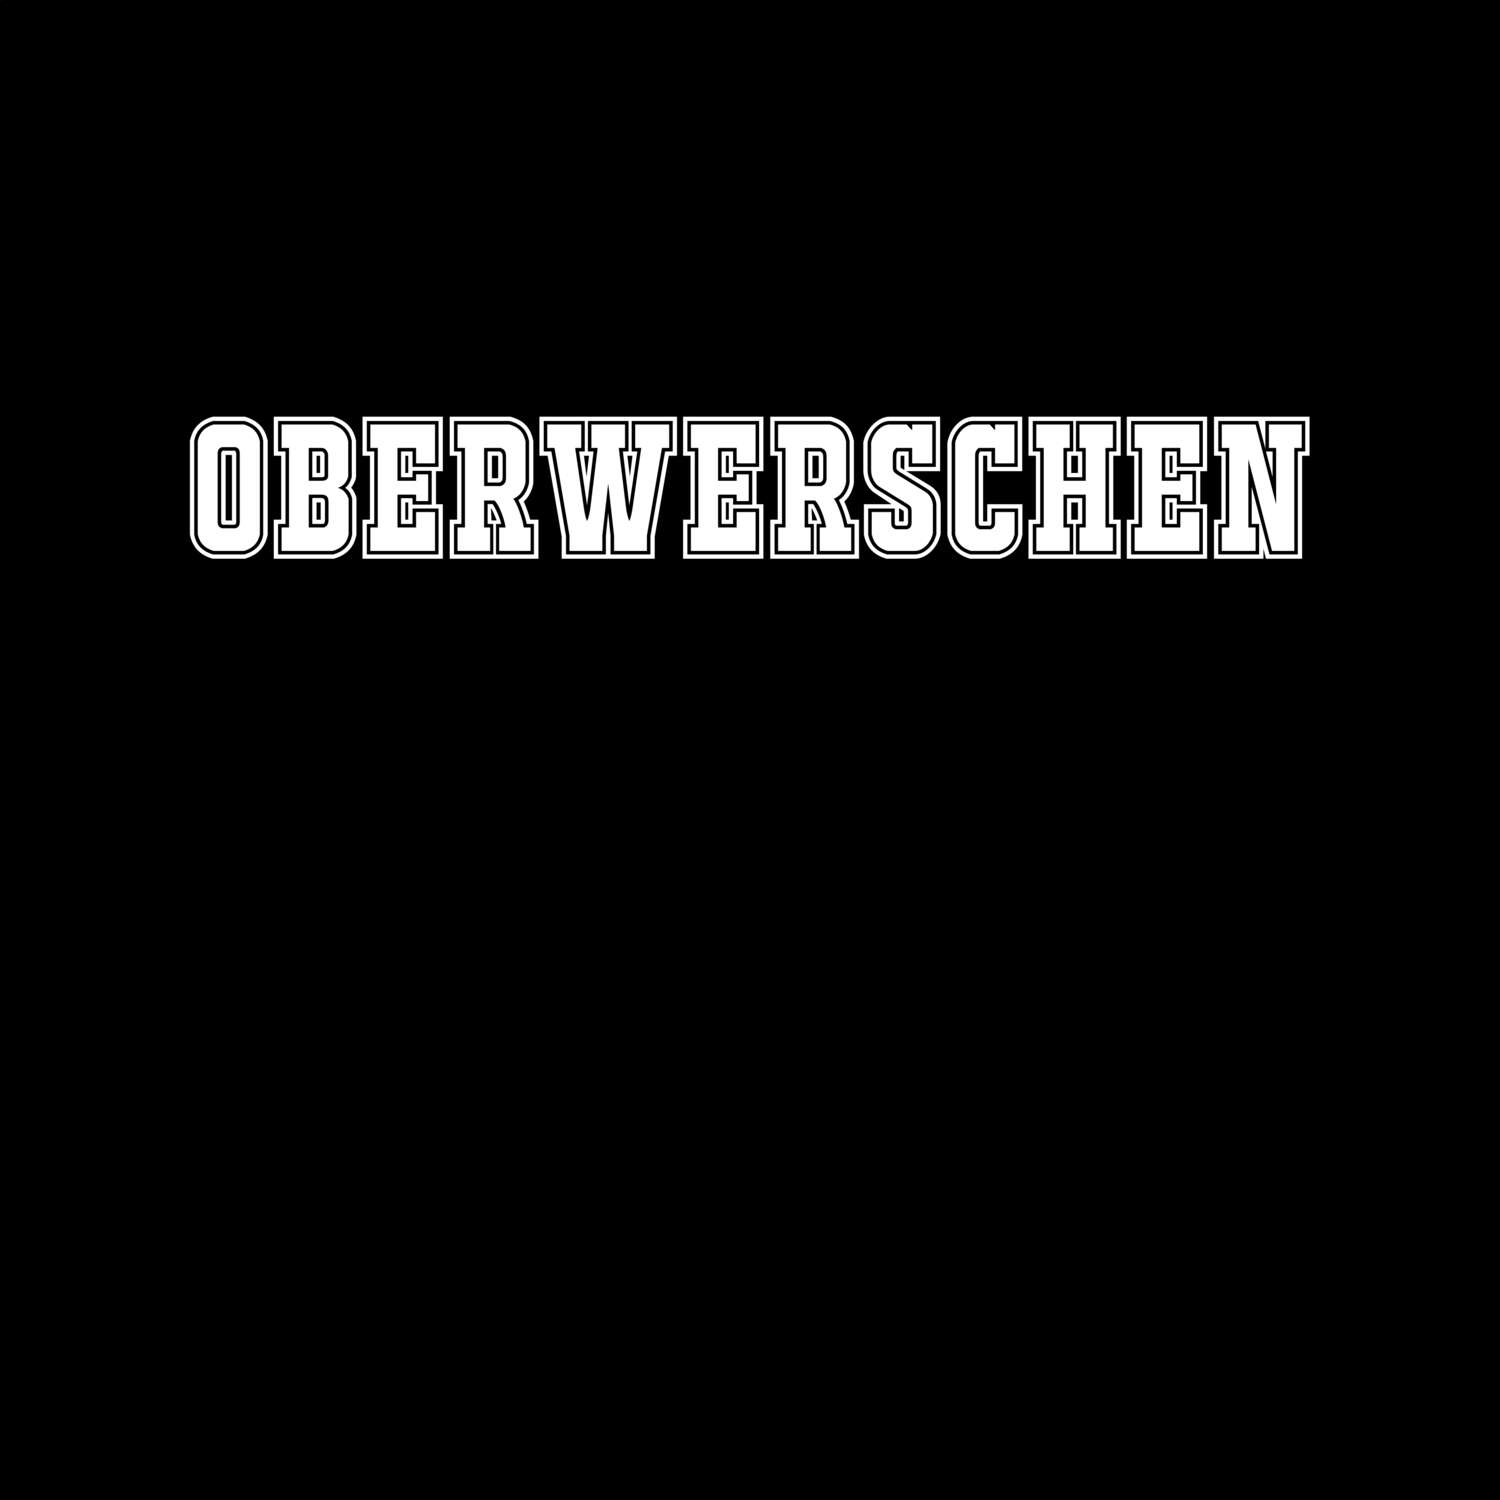 Oberwerschen T-Shirt »Classic«